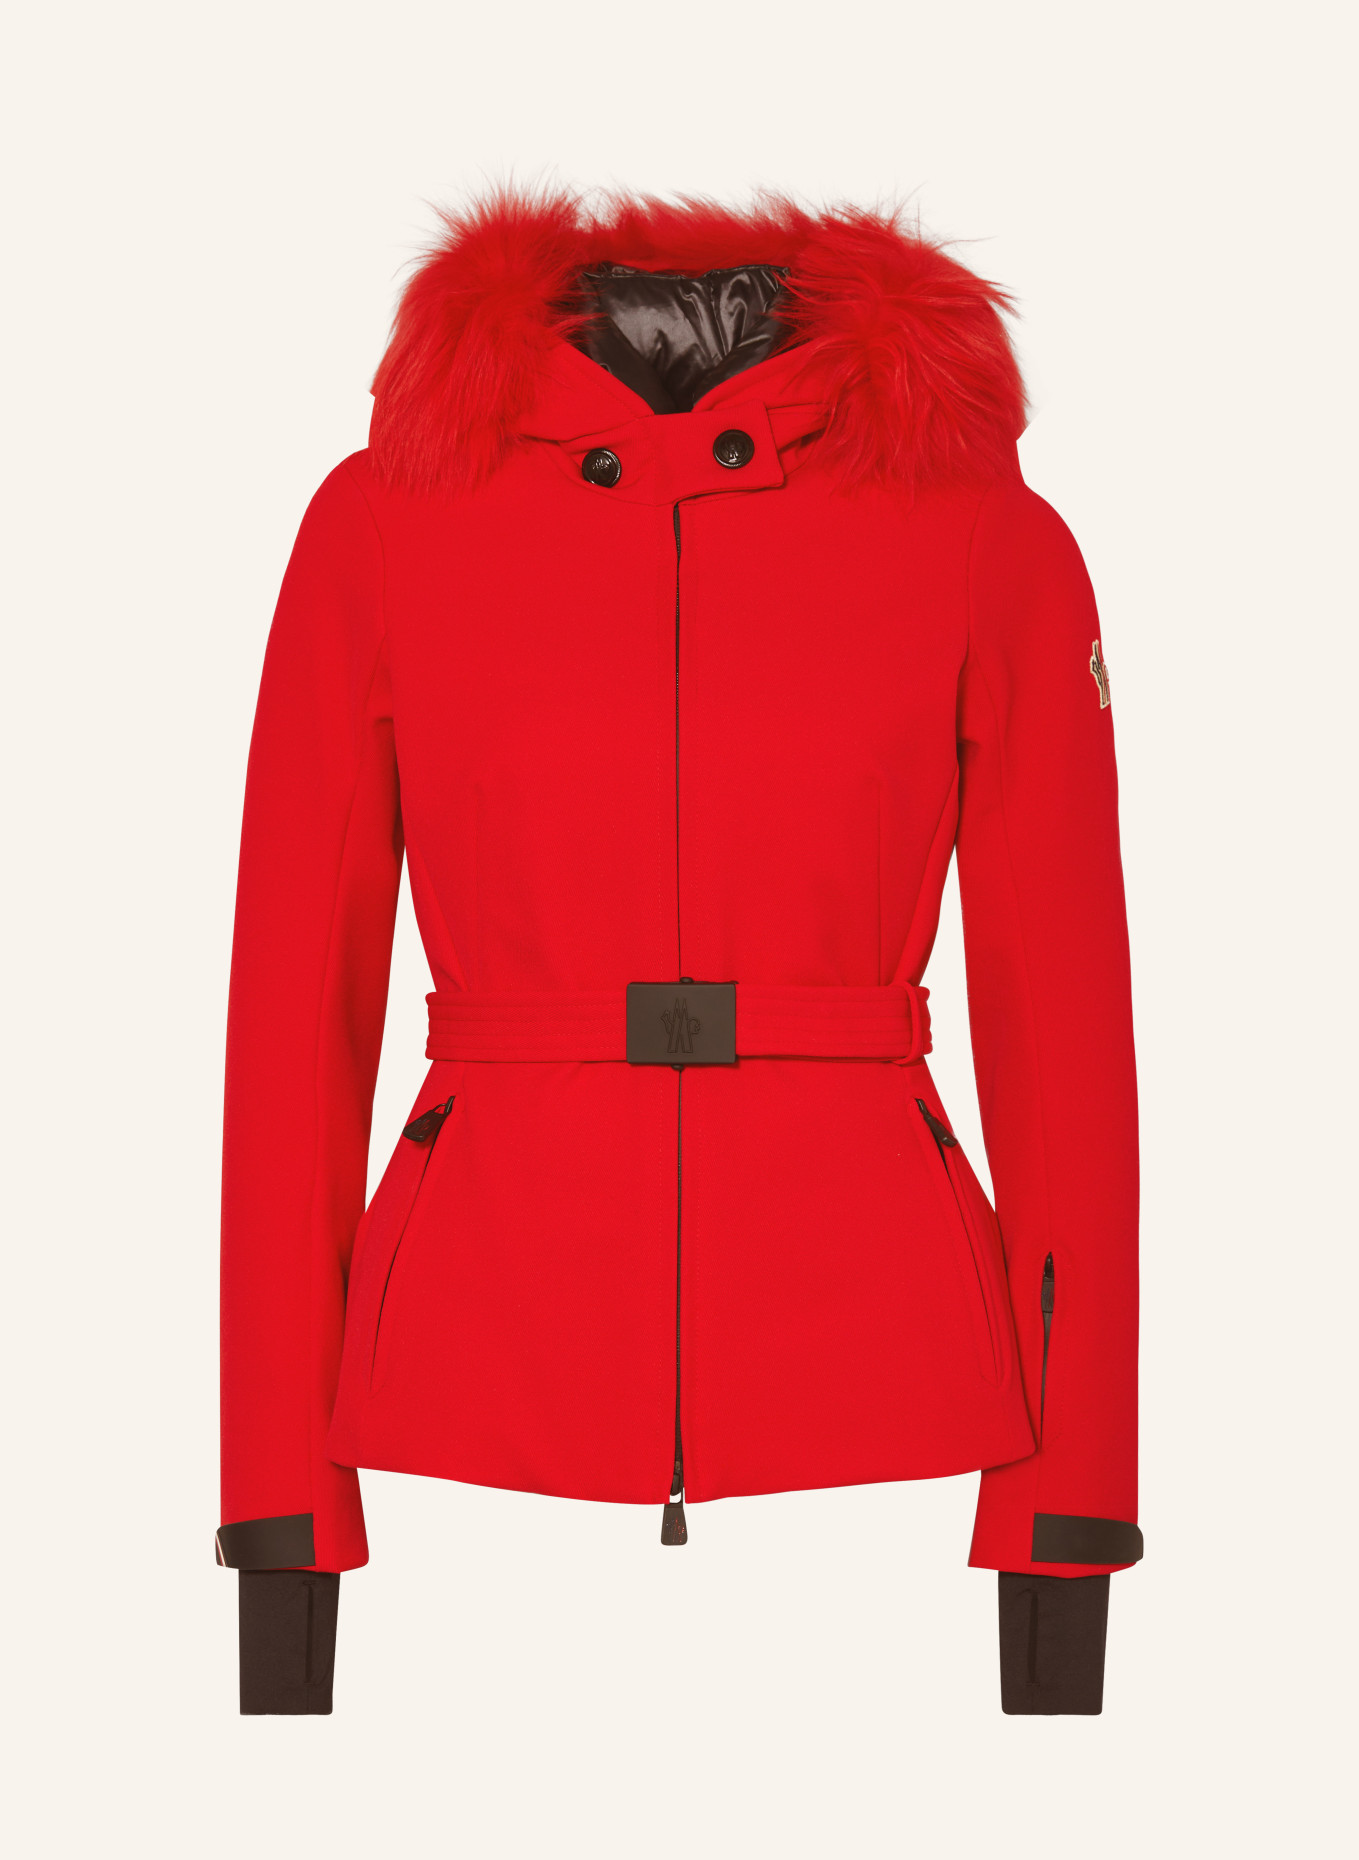 MONCLER GRENOBLE Ski jacket, Color: RED (Image 1)